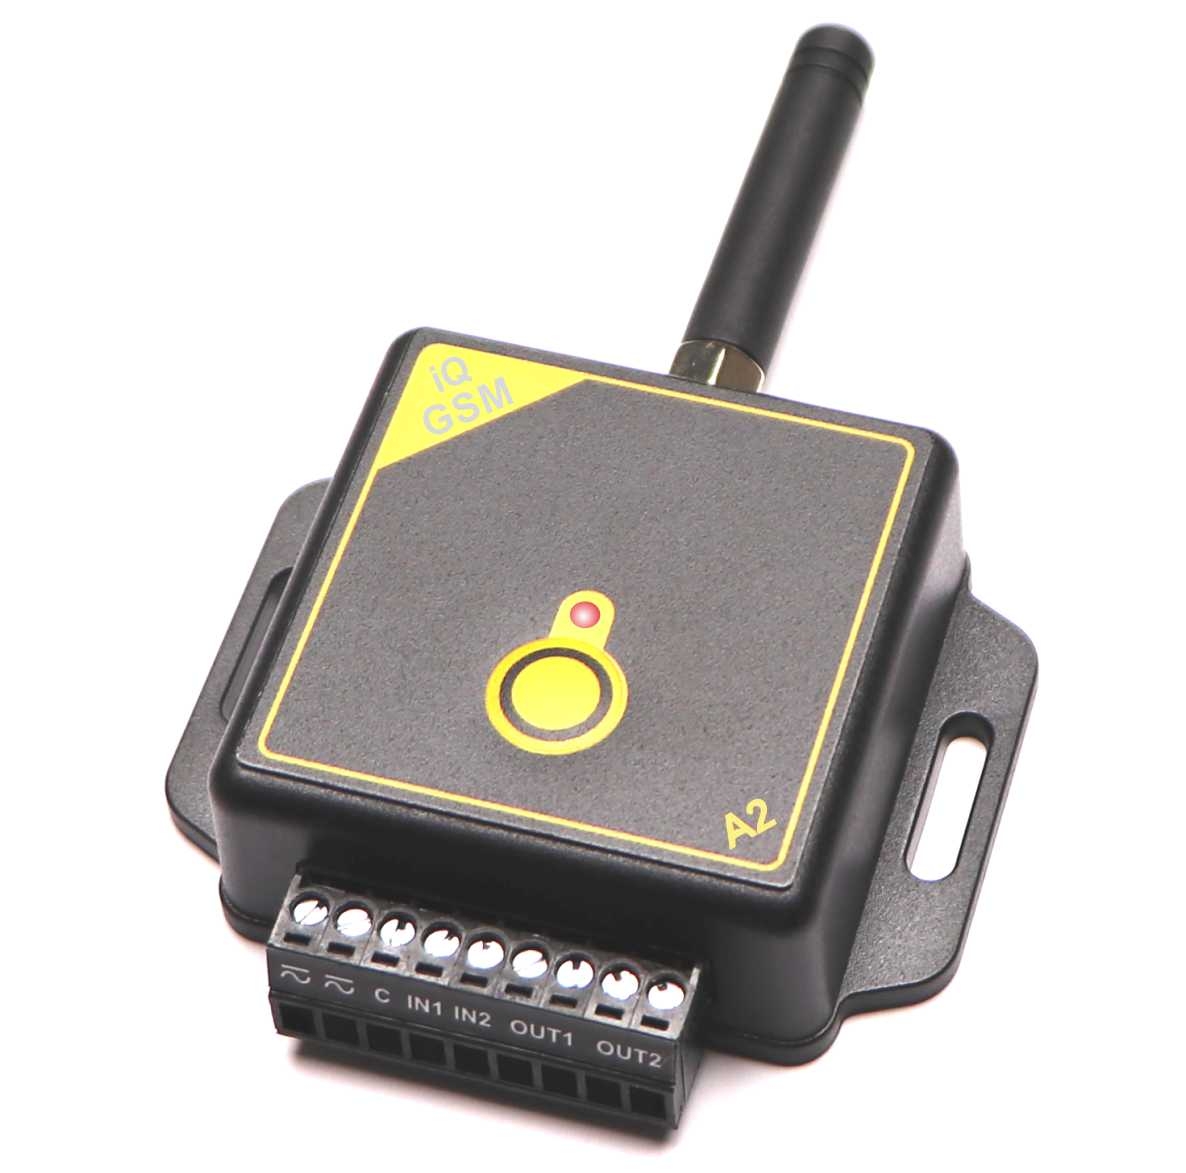 TFE GSM A2 alarm / ovladač se signalizací otevření vrat, brány, závory, 2 vstupy, 2 výstupy